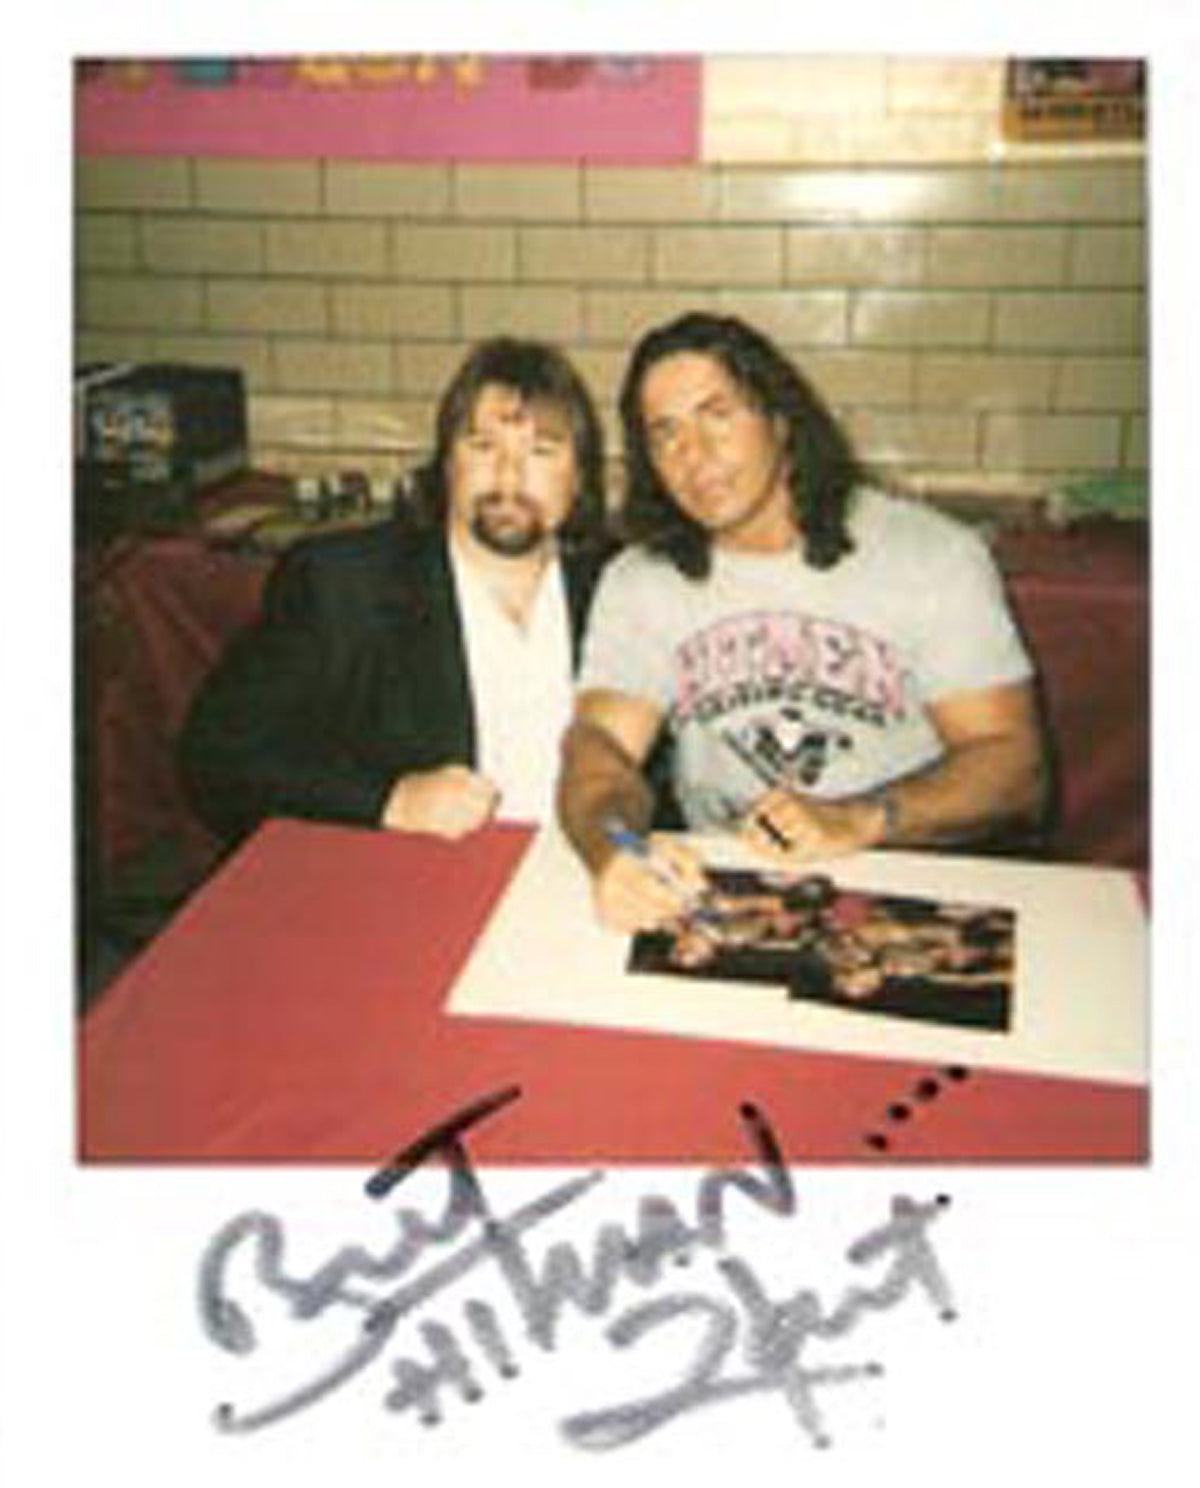 AM19  The Hart Foundation signed WWF Magazine w/ COA Bret Hart Jim Neidhart